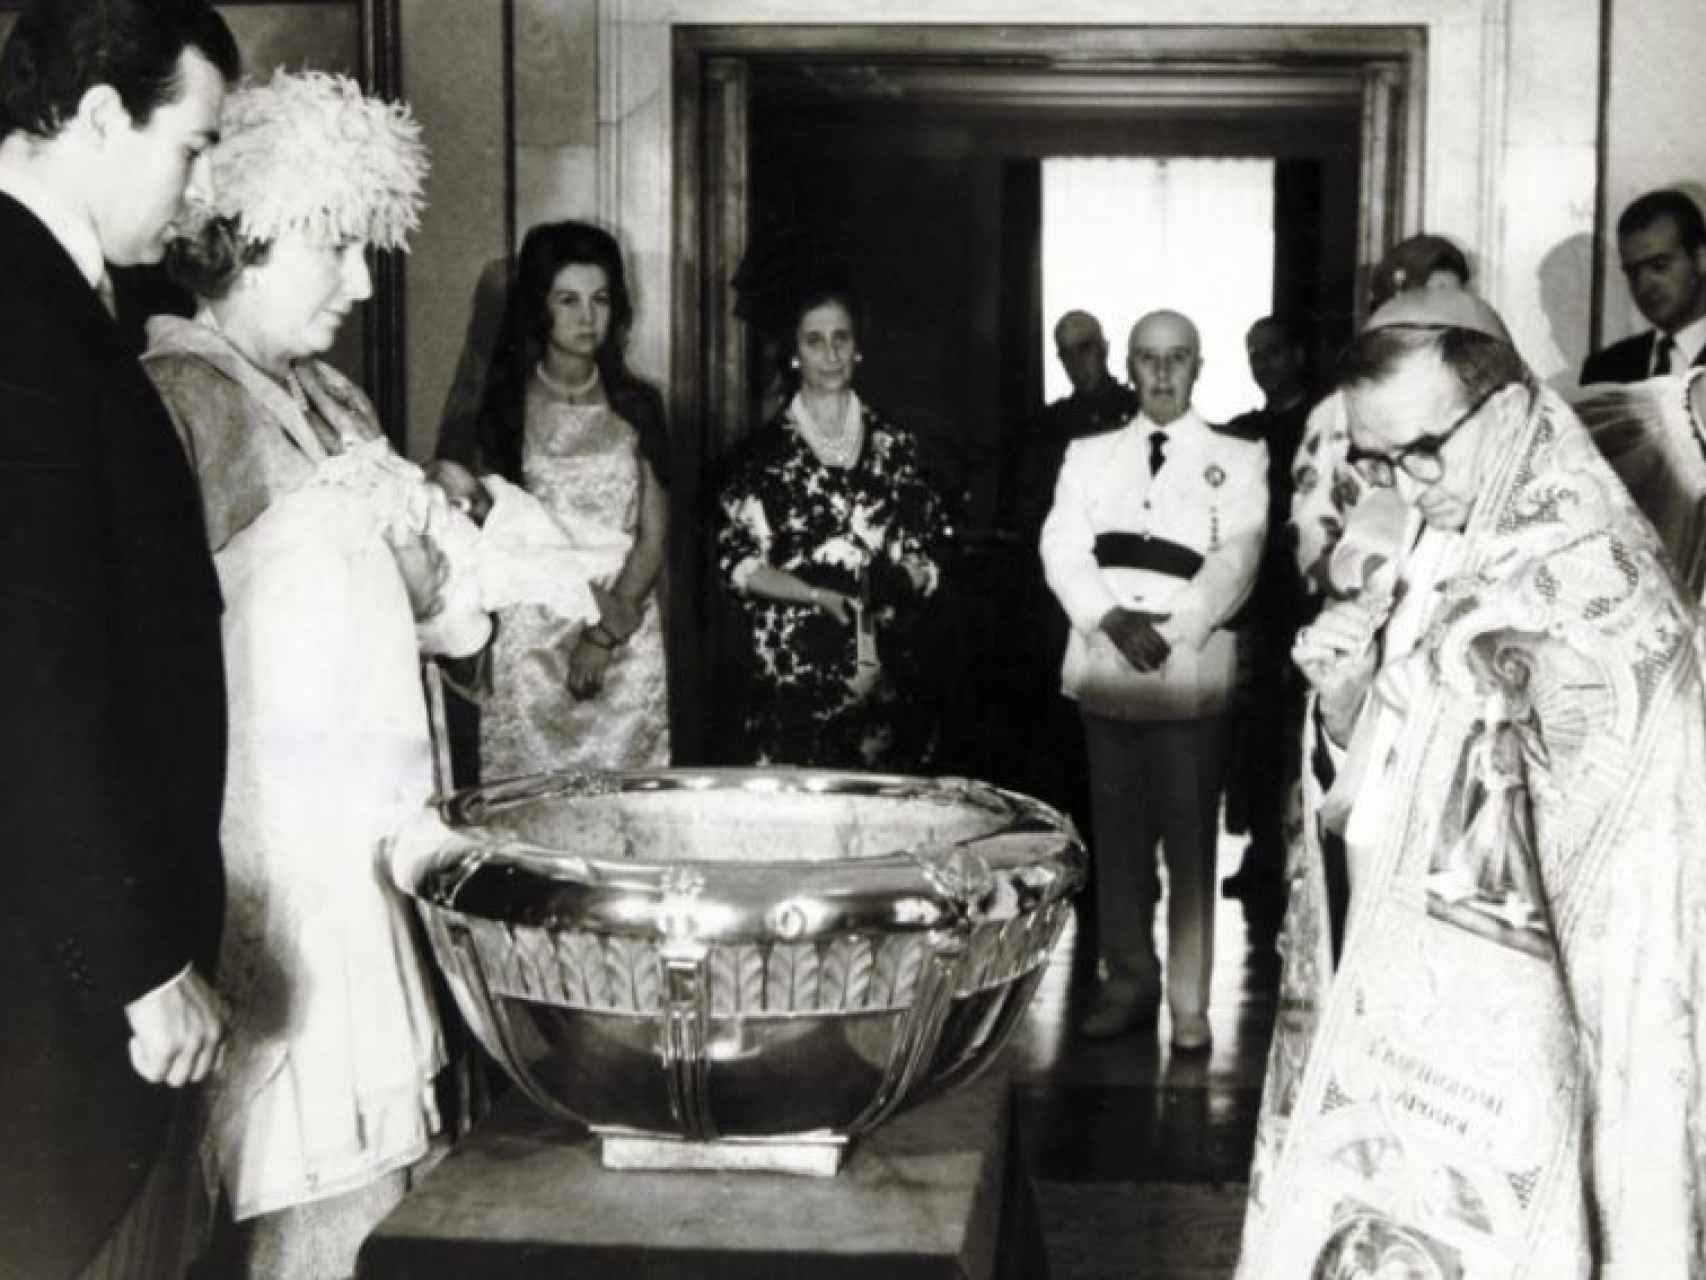 La reina Sofía, Carmen Polo, Franco y el rey Juan Carlos (al fondo a la derecha) en el bautizo de la infanta Elena.